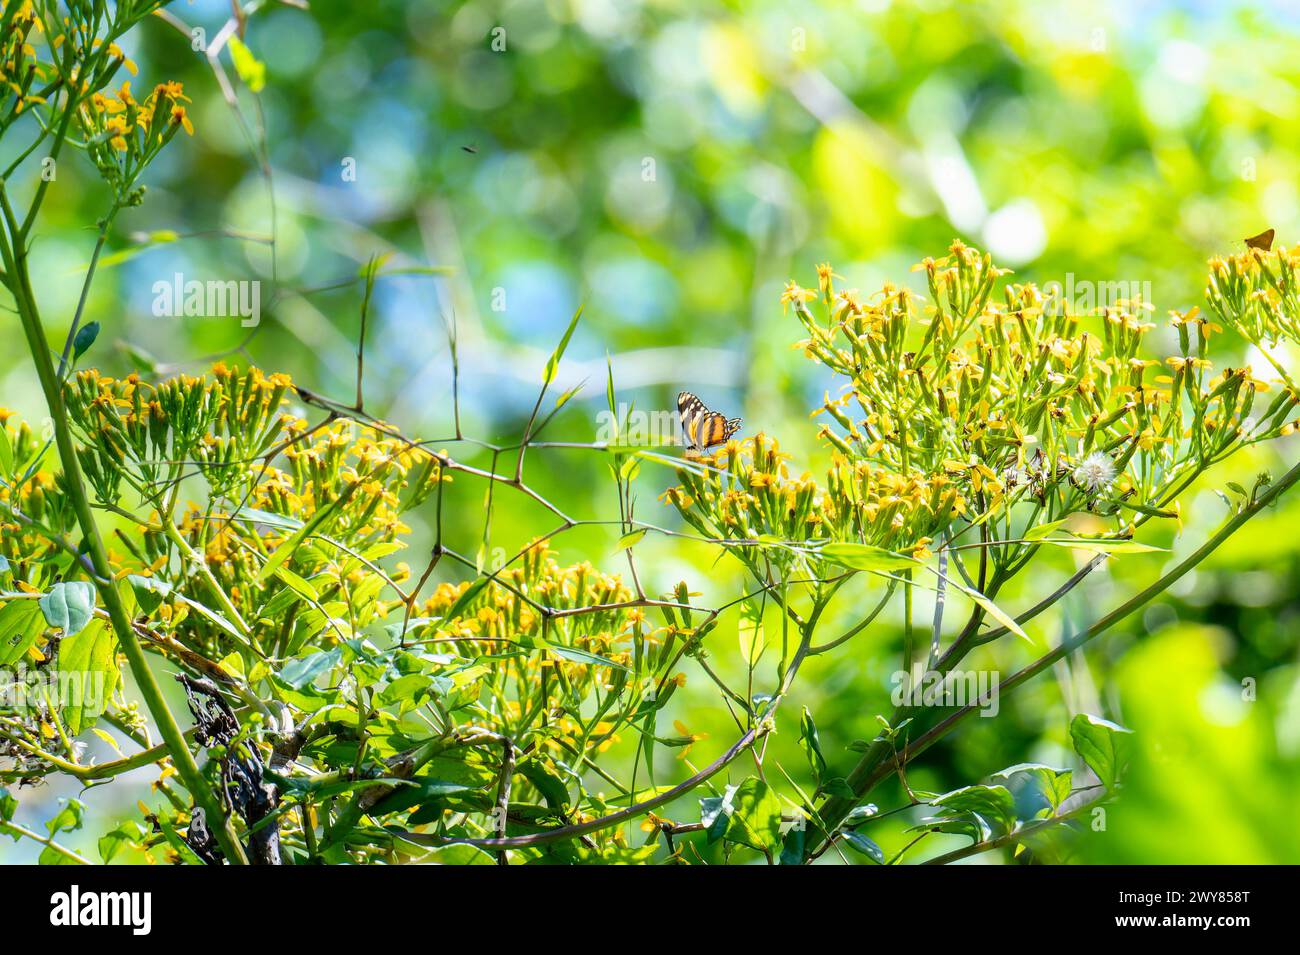 Una Mezzaluna alata lunga, Eresia phillyra, ssp. Phillyra, farfalla, arroccata su fiori gialli in erba in Messico. Un selvaggio paesaggio messicano del Chiapas. Foto Stock